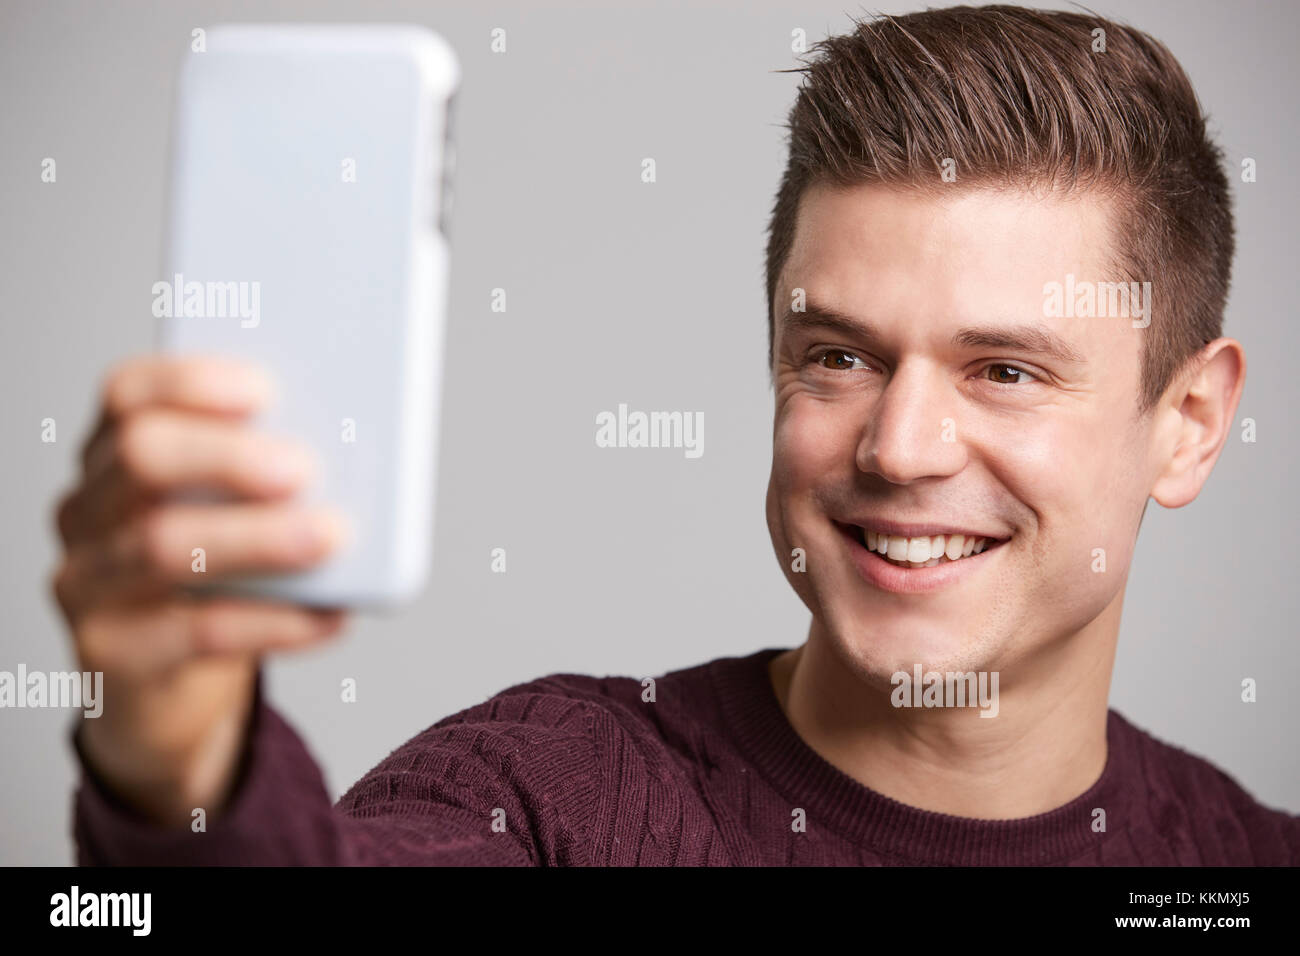 Nahaufnahme von einem jungen Mann mit einem selfie mit seinem Smartphone Stockfoto